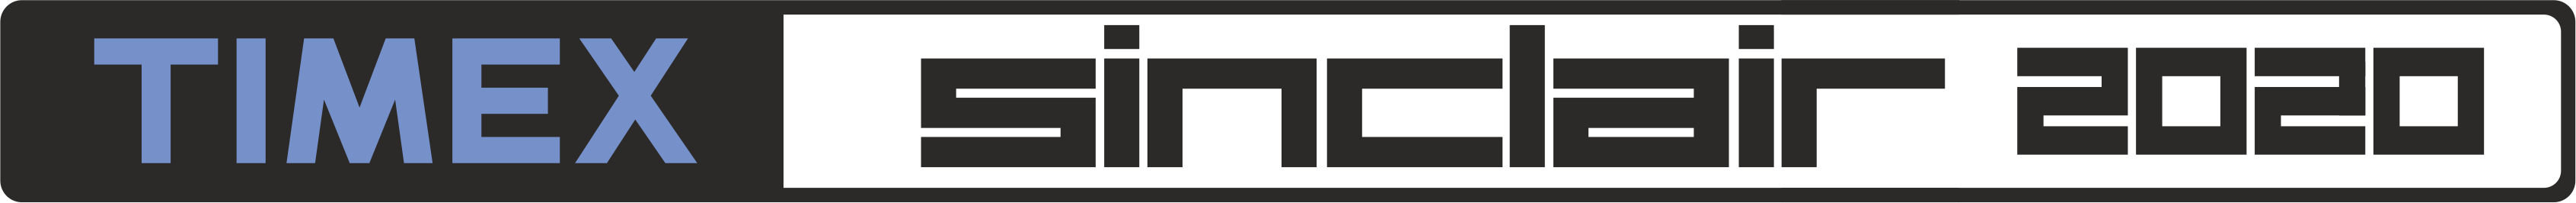 Timex Sinclair TS-2020: logo